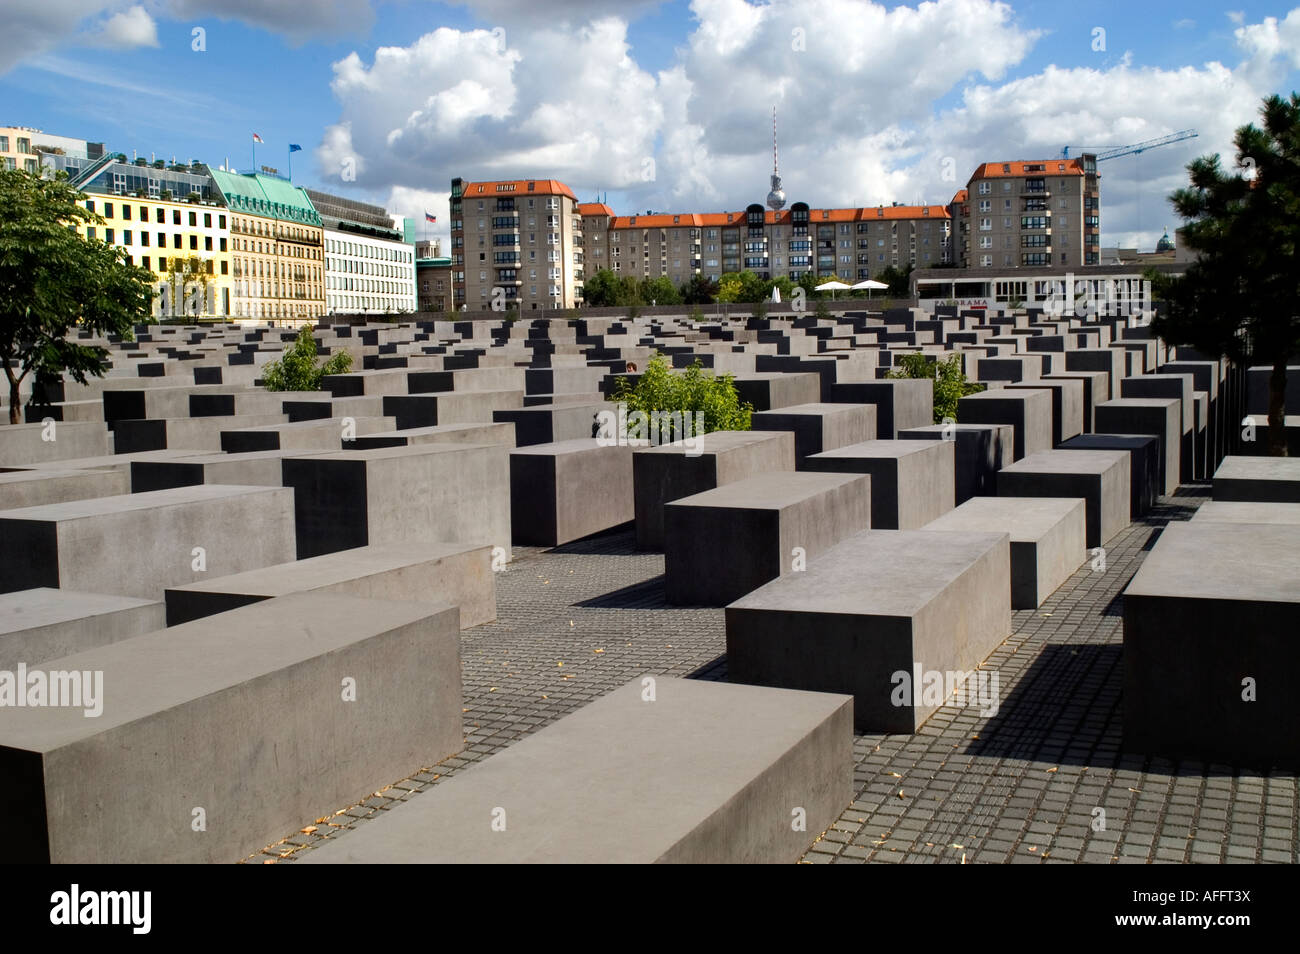 Jüdische Holocaust Memoria abstrakte Sicht von rechteckigen grauen Steinen Denkmal entworfen Eberstrasse vom Architekten Peter Eisenman Berlin Deutschland Stockfoto